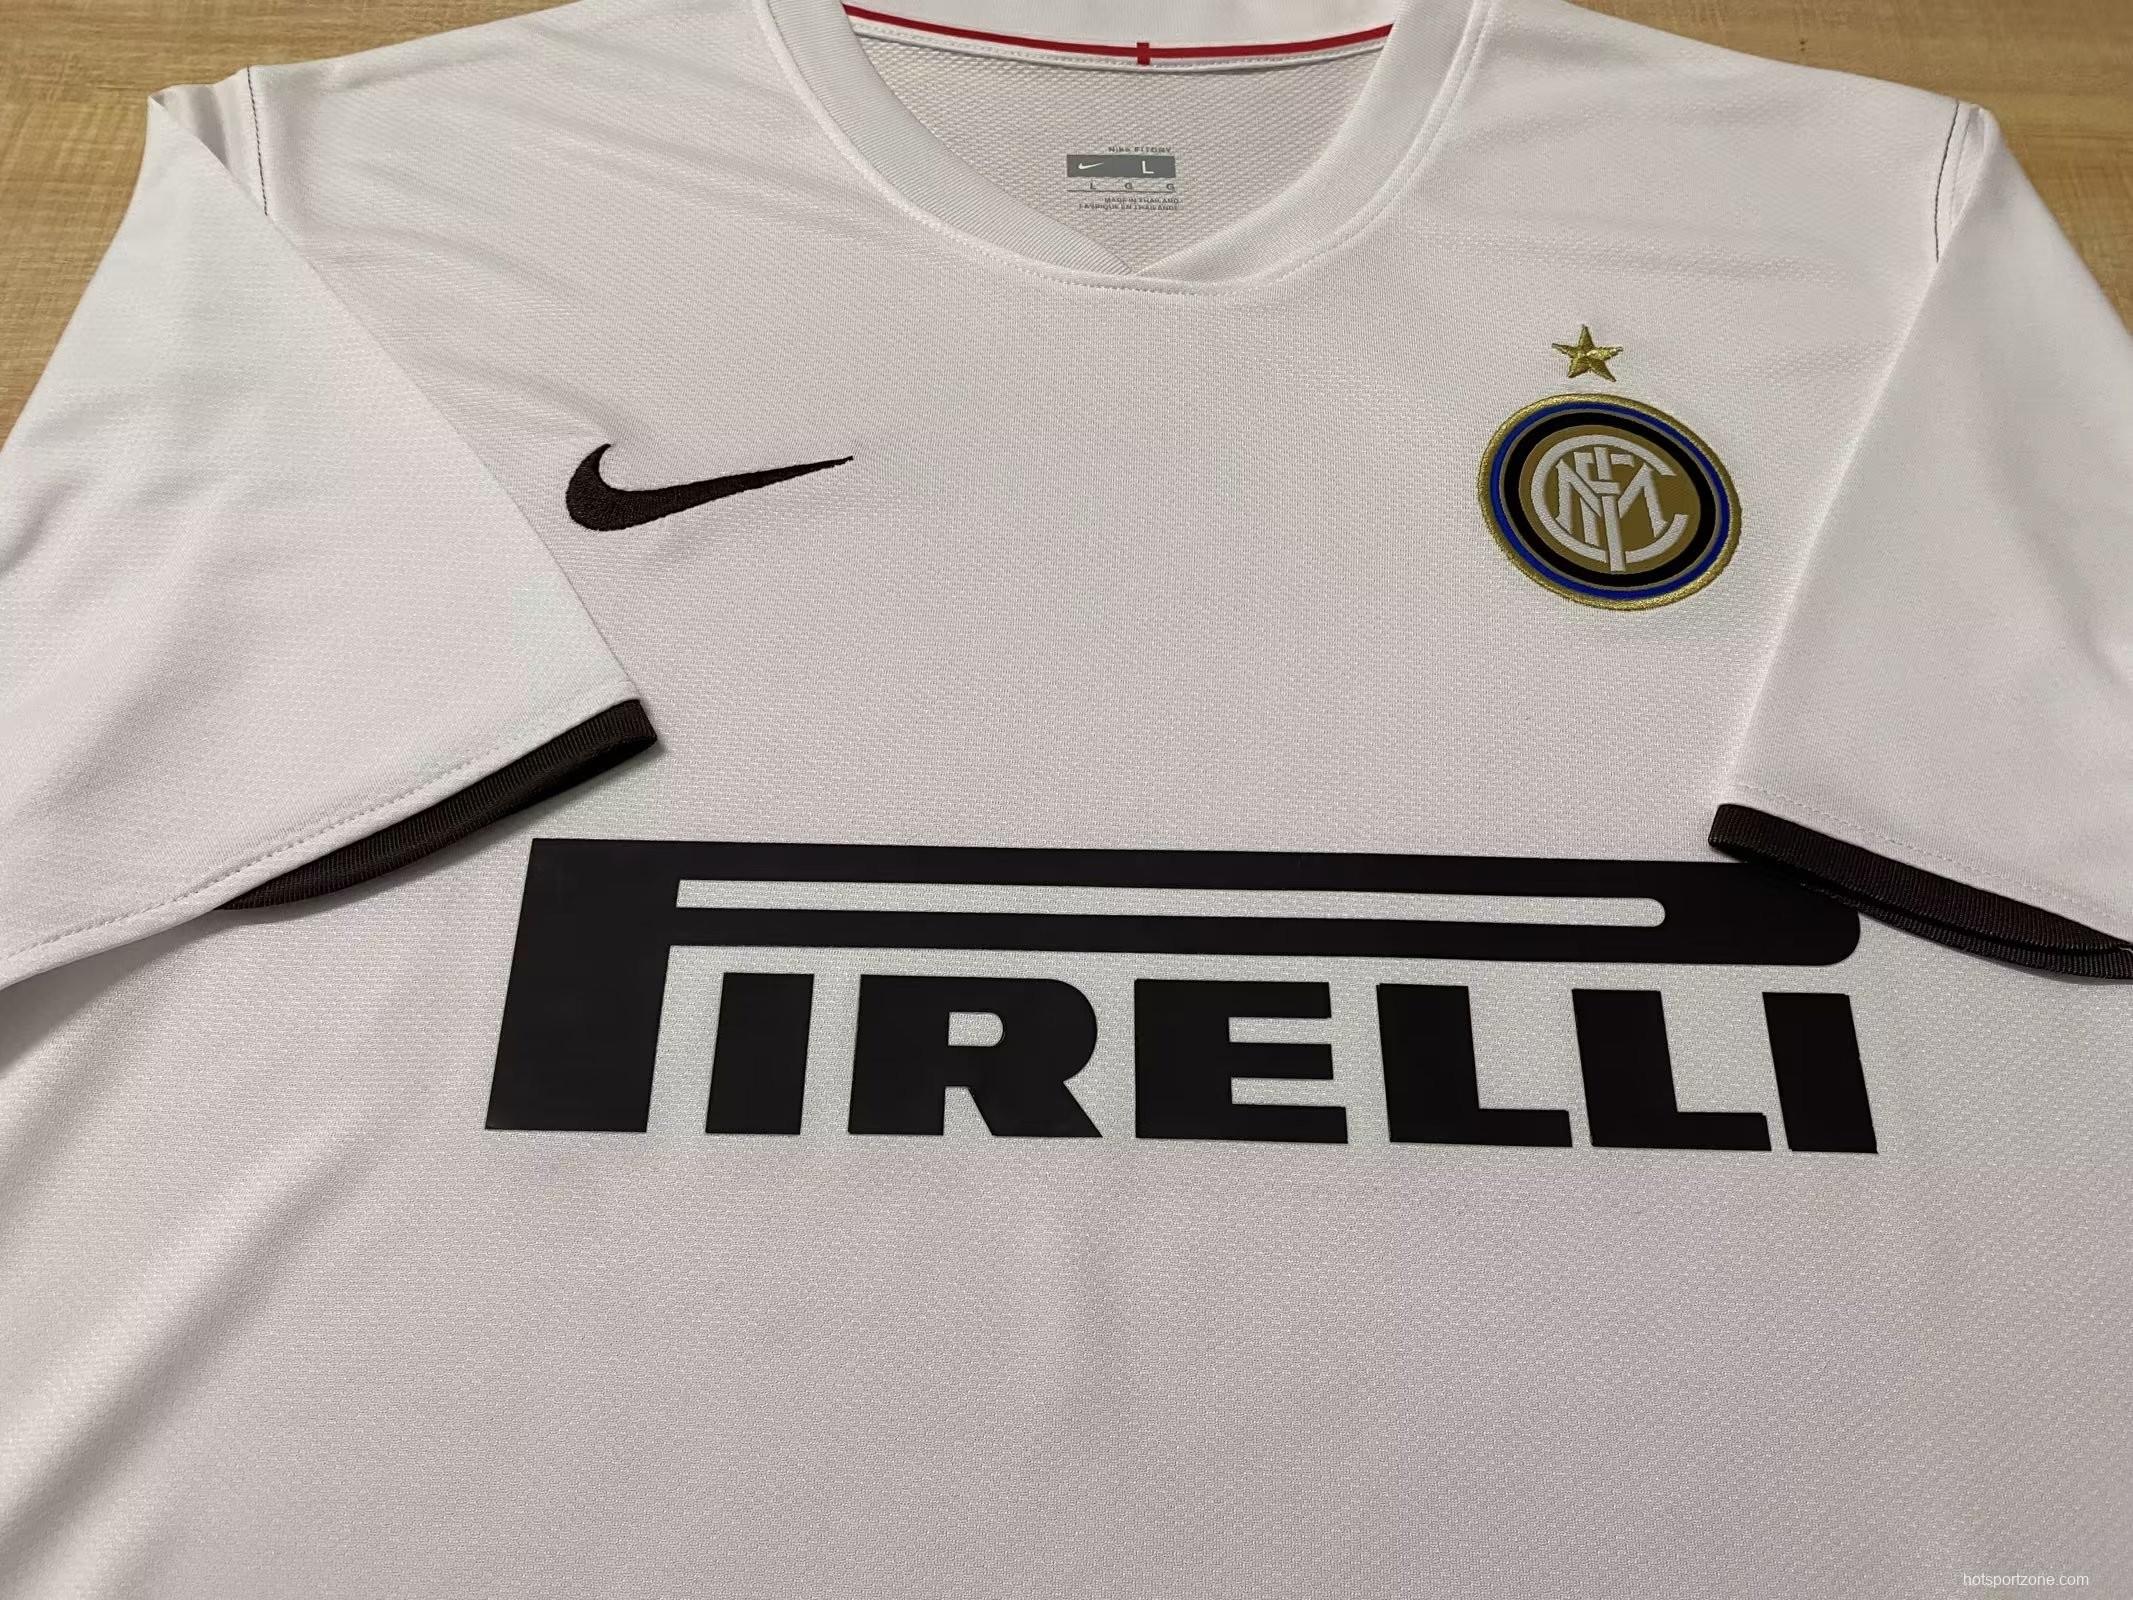 Retro 08/09 Inter Milan Away Jersey